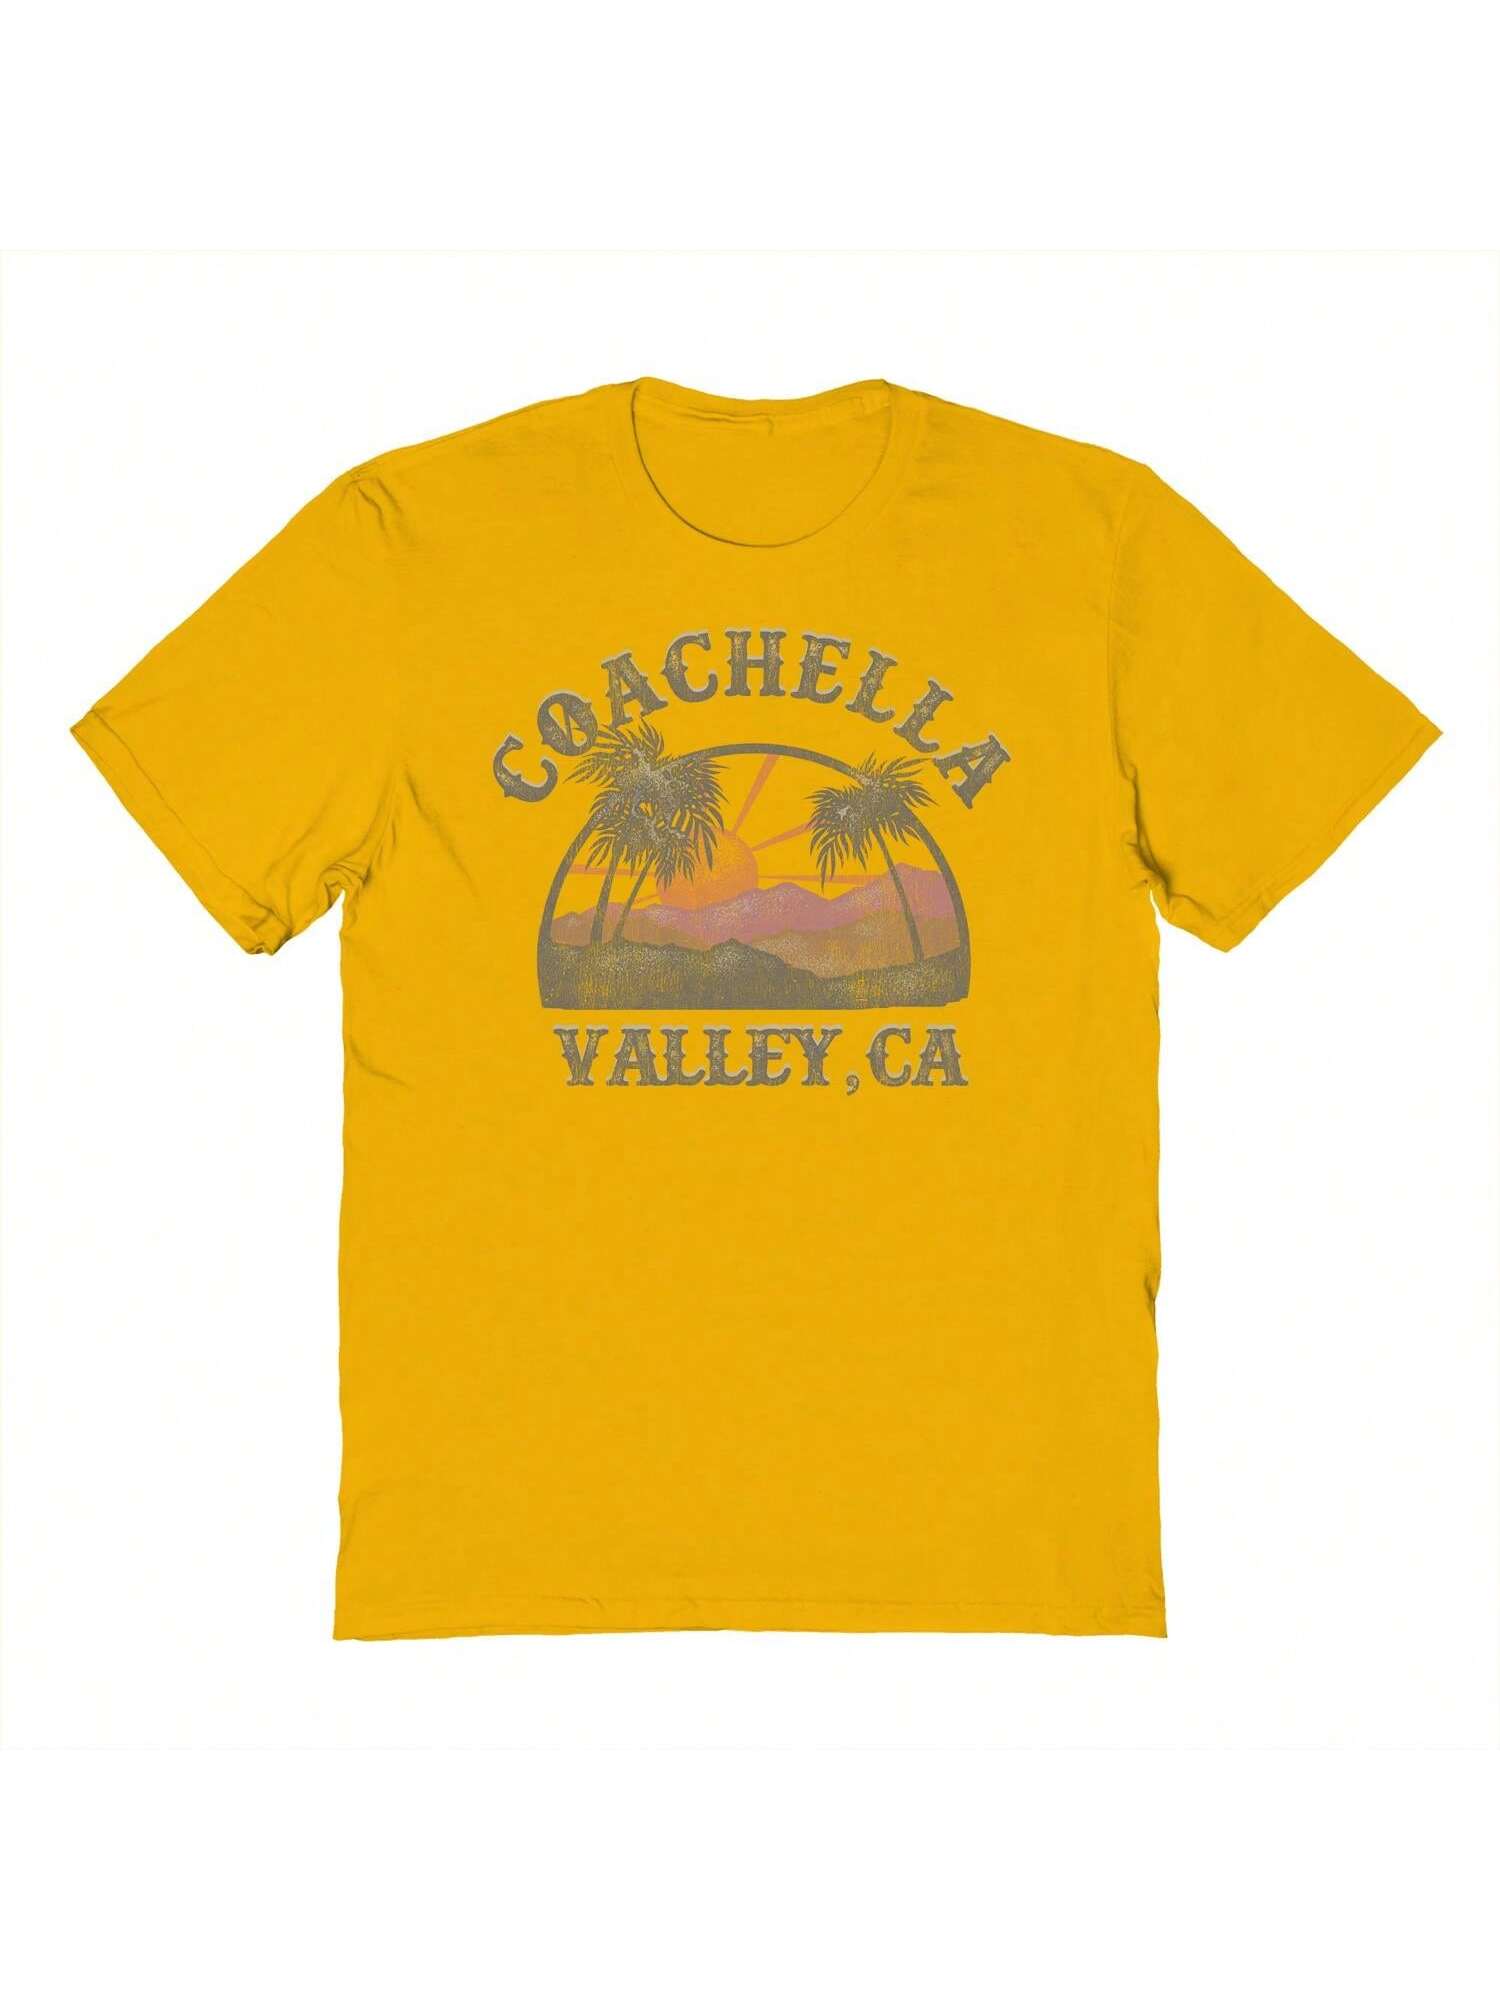 Белая мужская хлопковая футболка с короткими рукавами Haywood & Main Coachella с графическим рисунком, золото белая мужская хлопковая футболка с короткими рукавами haywood